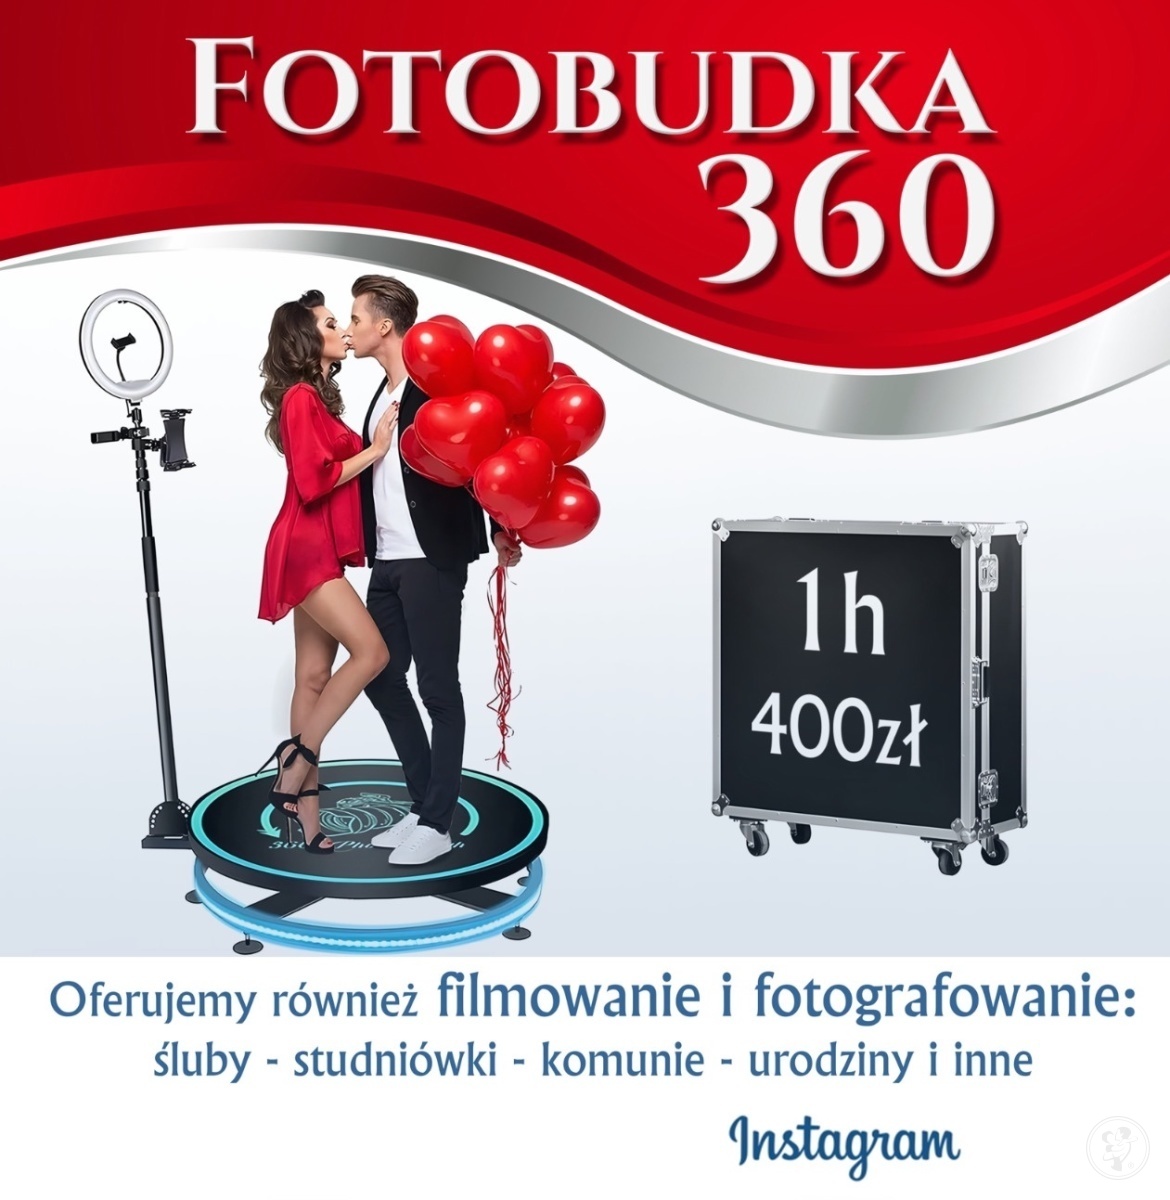 Fotobudka 360 Arek Mucha | Fotobudka na wesele Wałbrzych, dolnośląskie - zdjęcie 1